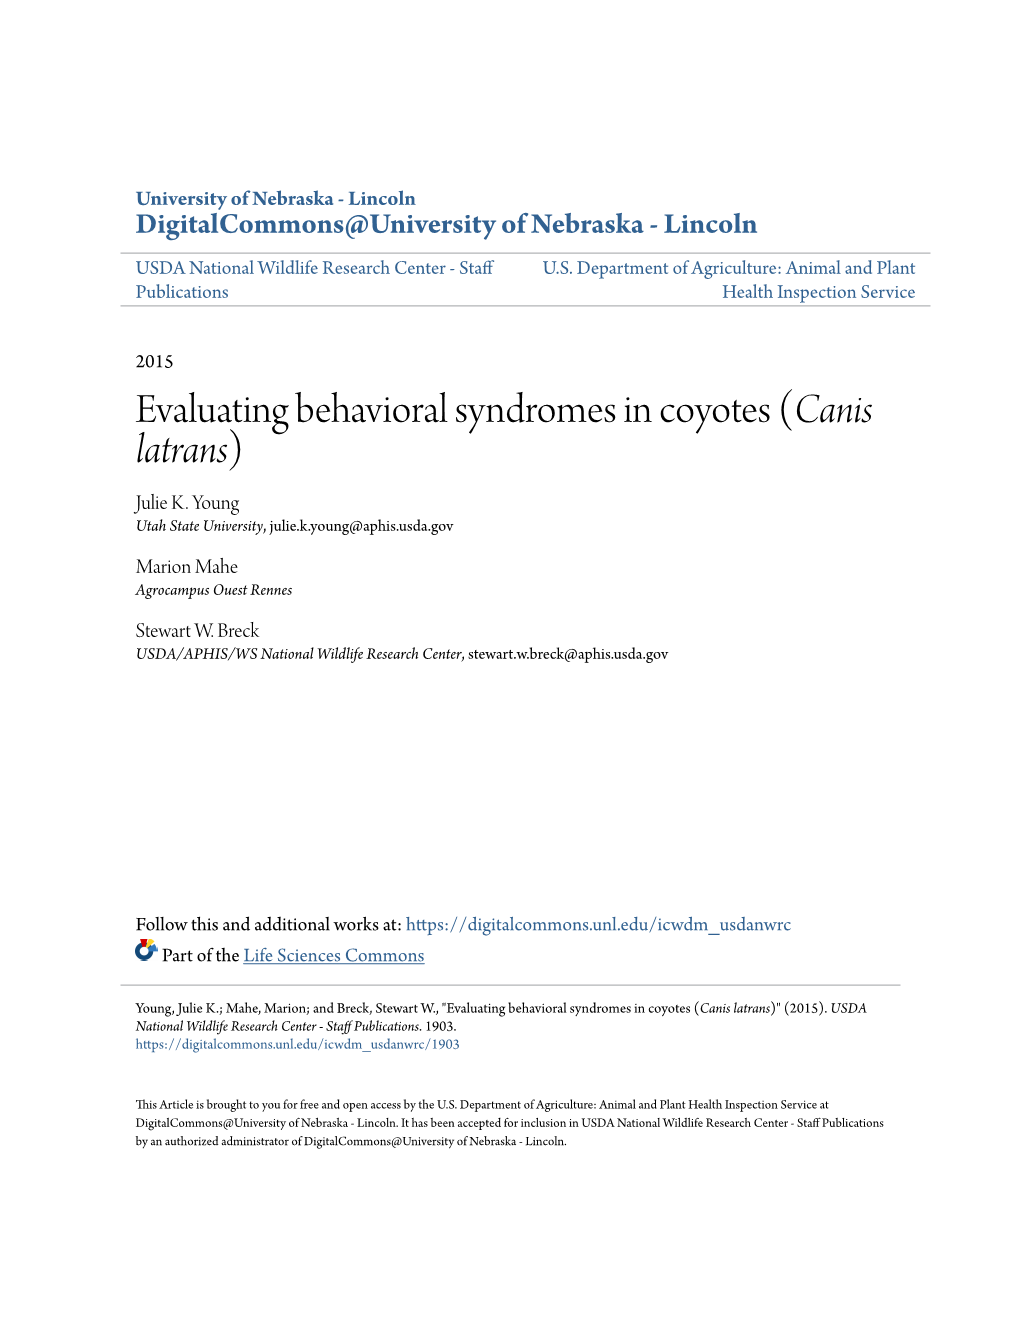 Evaluating Behavioral Syndromes in Coyotes (&lt;I&gt;Canis Latrans&lt;/I&gt;)